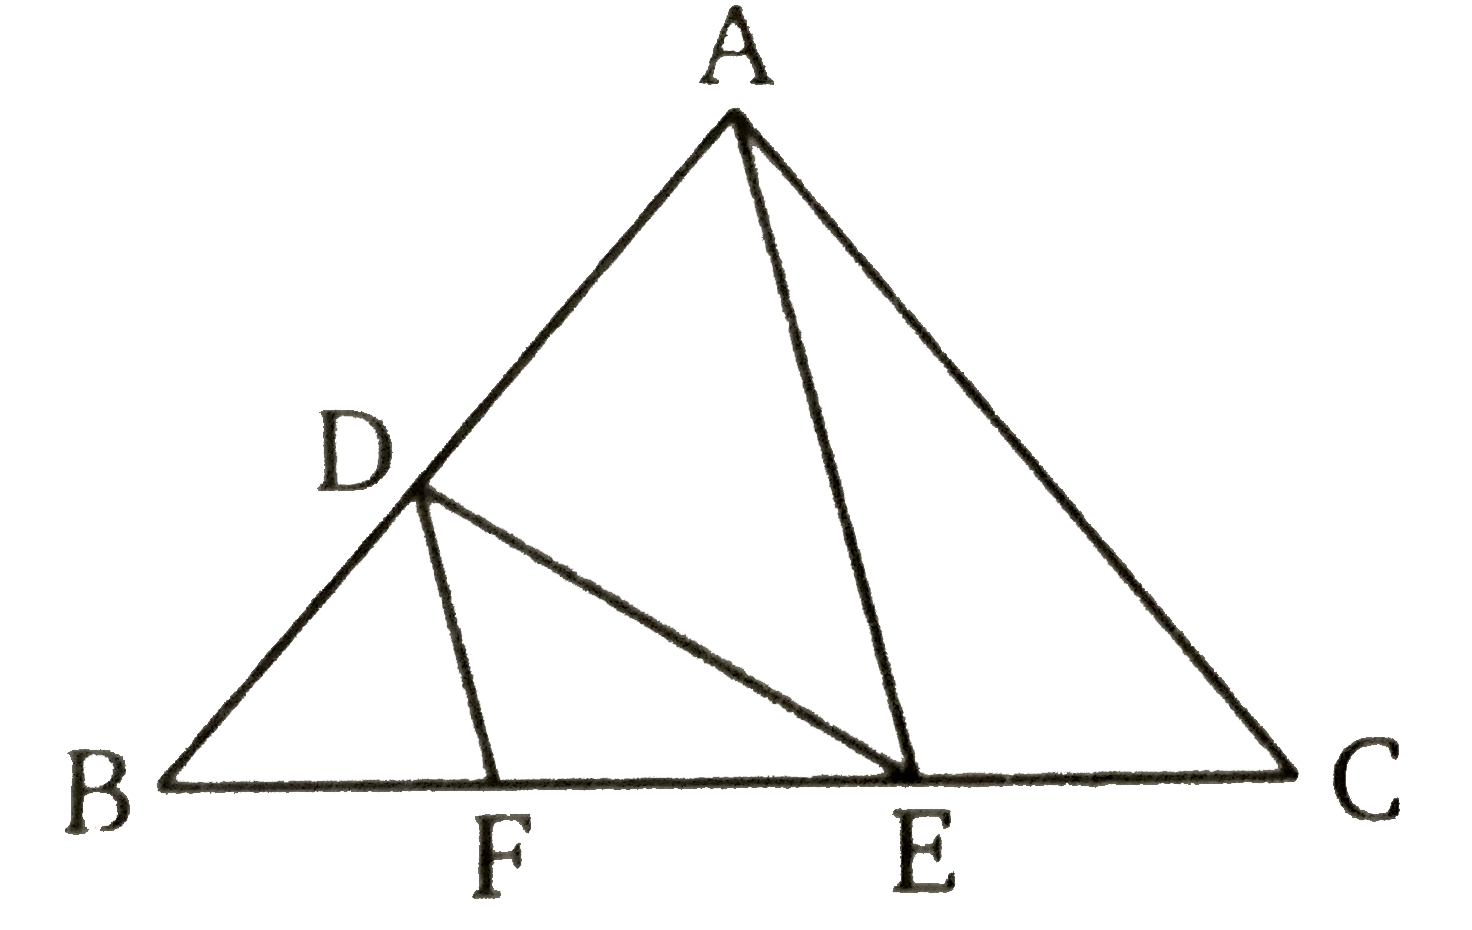 दी गई आकृति (चित्र 7.143) में, DE||AC तथा DF||AE है तो सिद्ध कीजिए कि  (BF)/(FE) = (BE)/(EC)